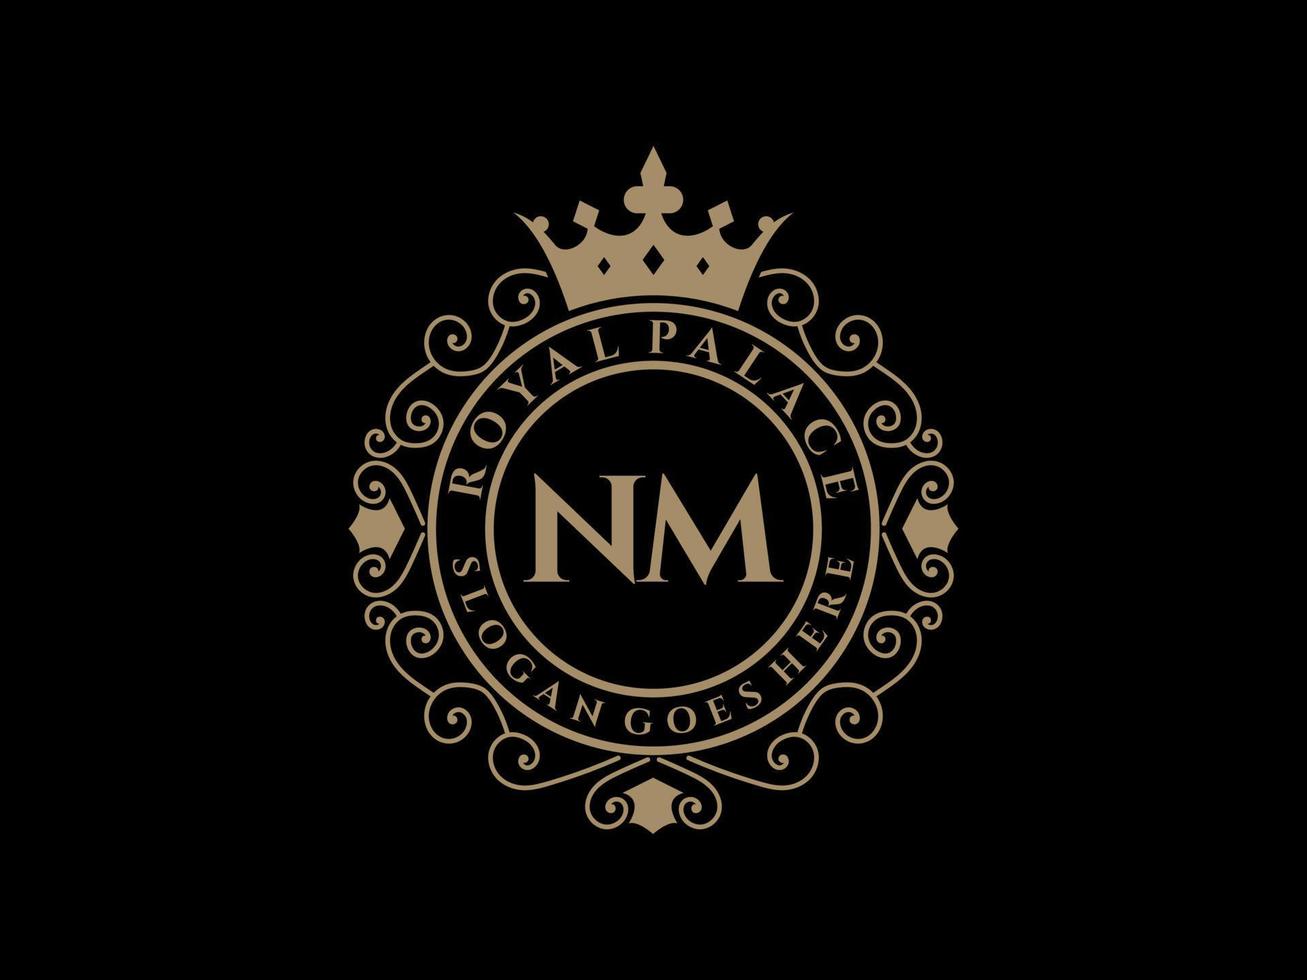 lettre nm logo victorien de luxe royal antique avec cadre ornemental. vecteur